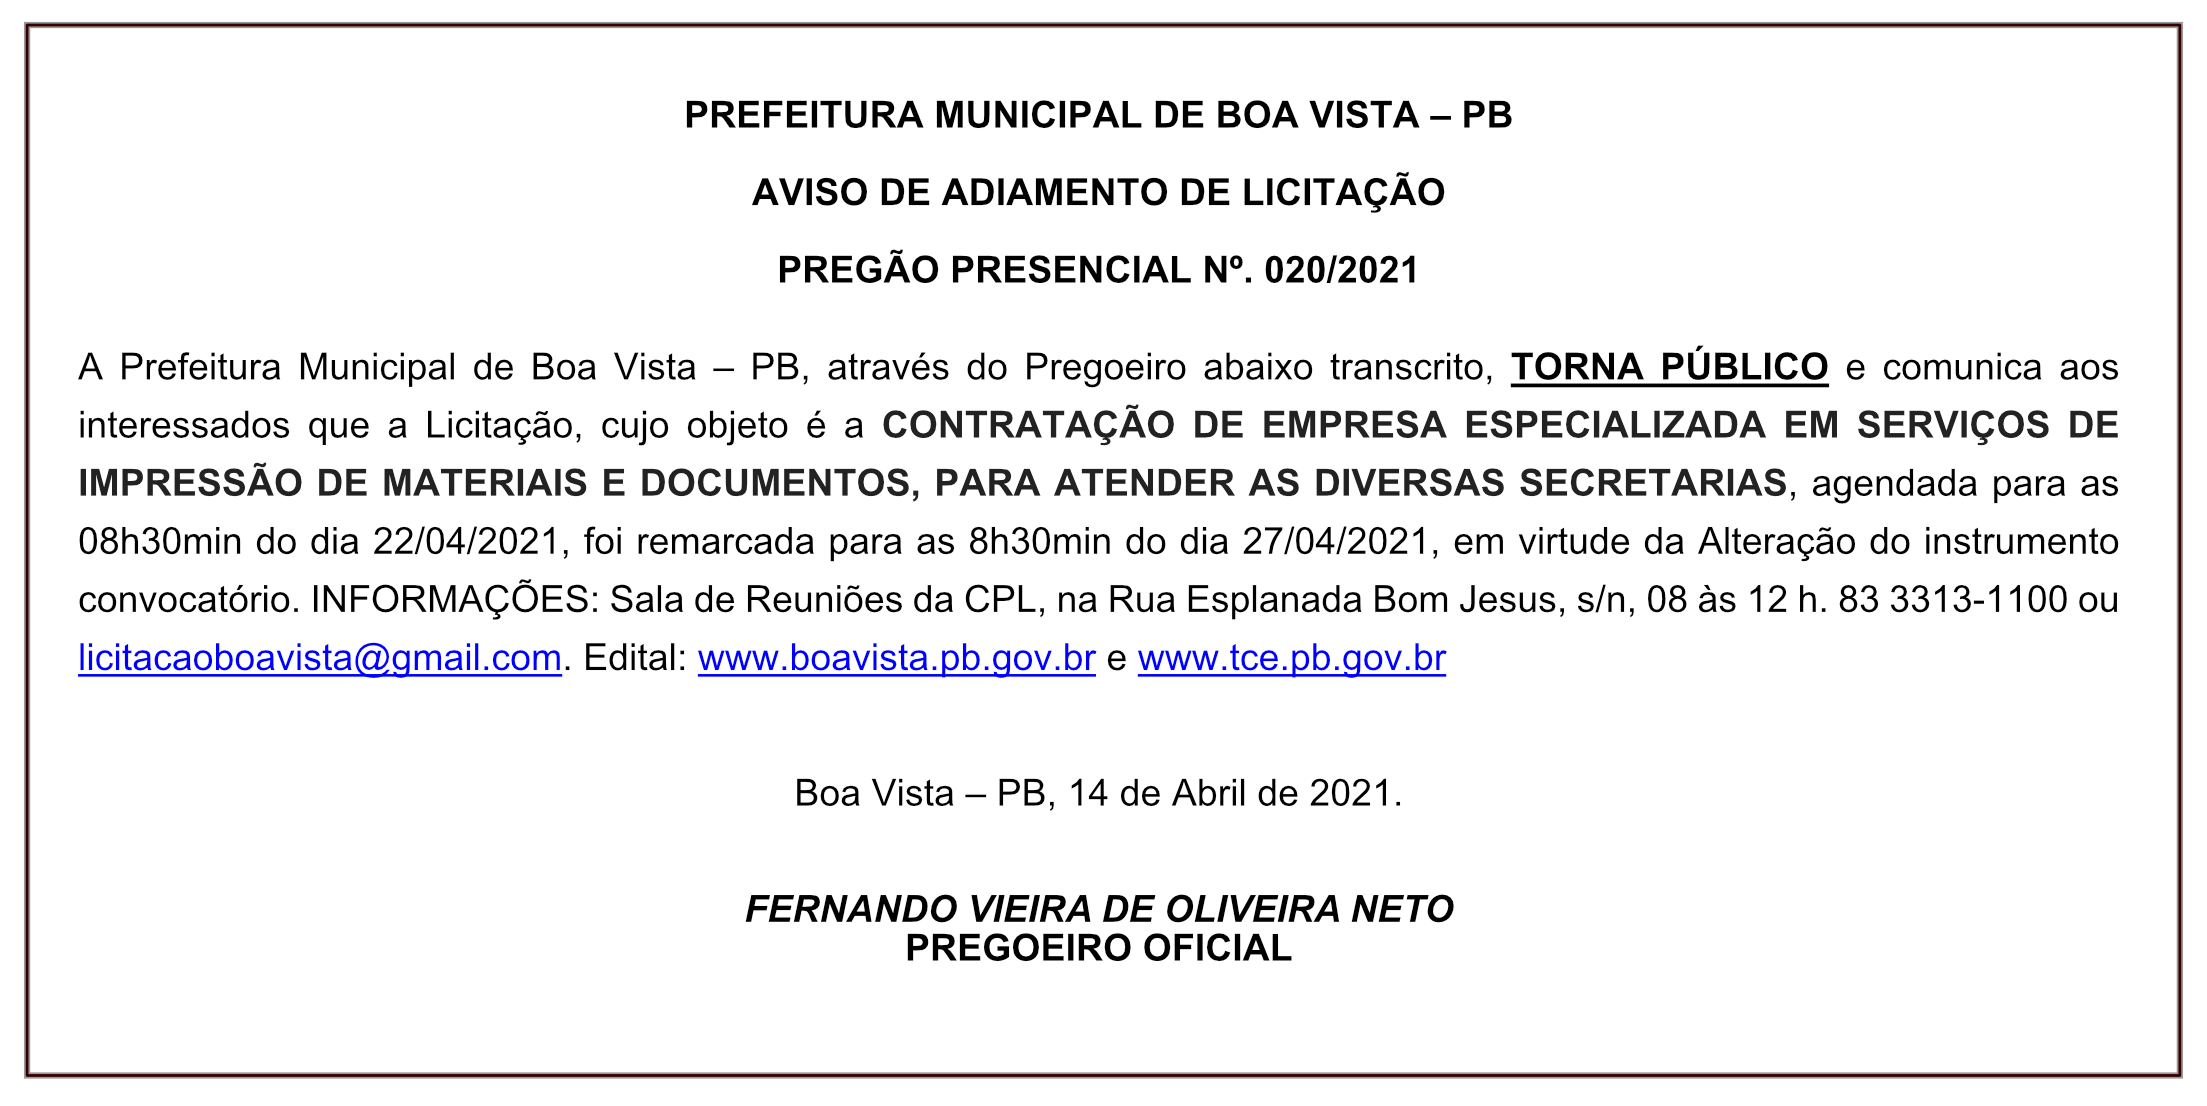 PREFEITURA MUNICIPAL DE BOA VISTA – AVISO DE ADIAMENTO DE LICITAÇÃO – PREGÃO PRESENCIAL Nº. 020/2021